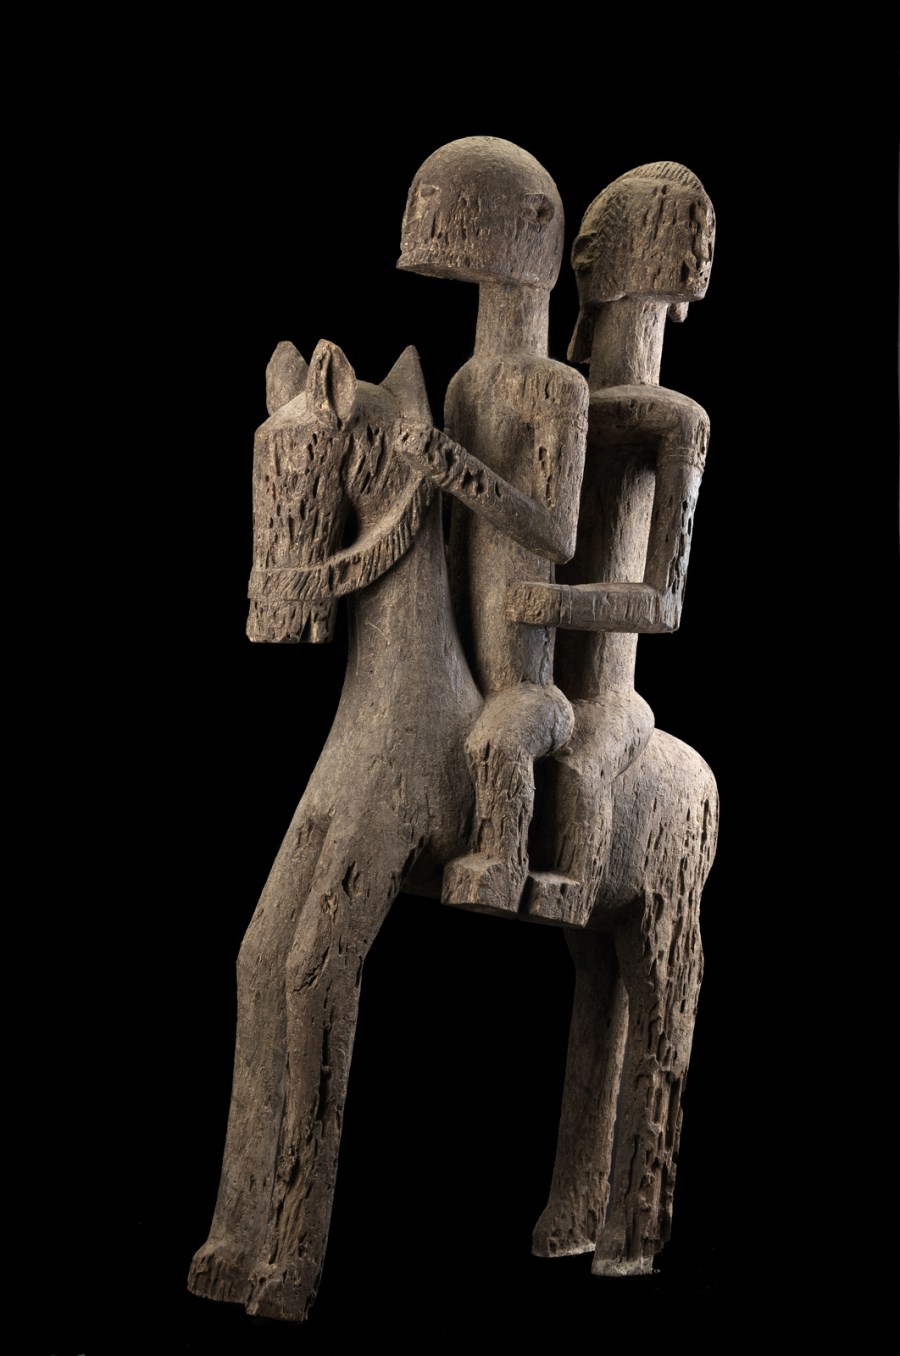 Coppia a cavallo, Dogon
Mali (Arte Africana )